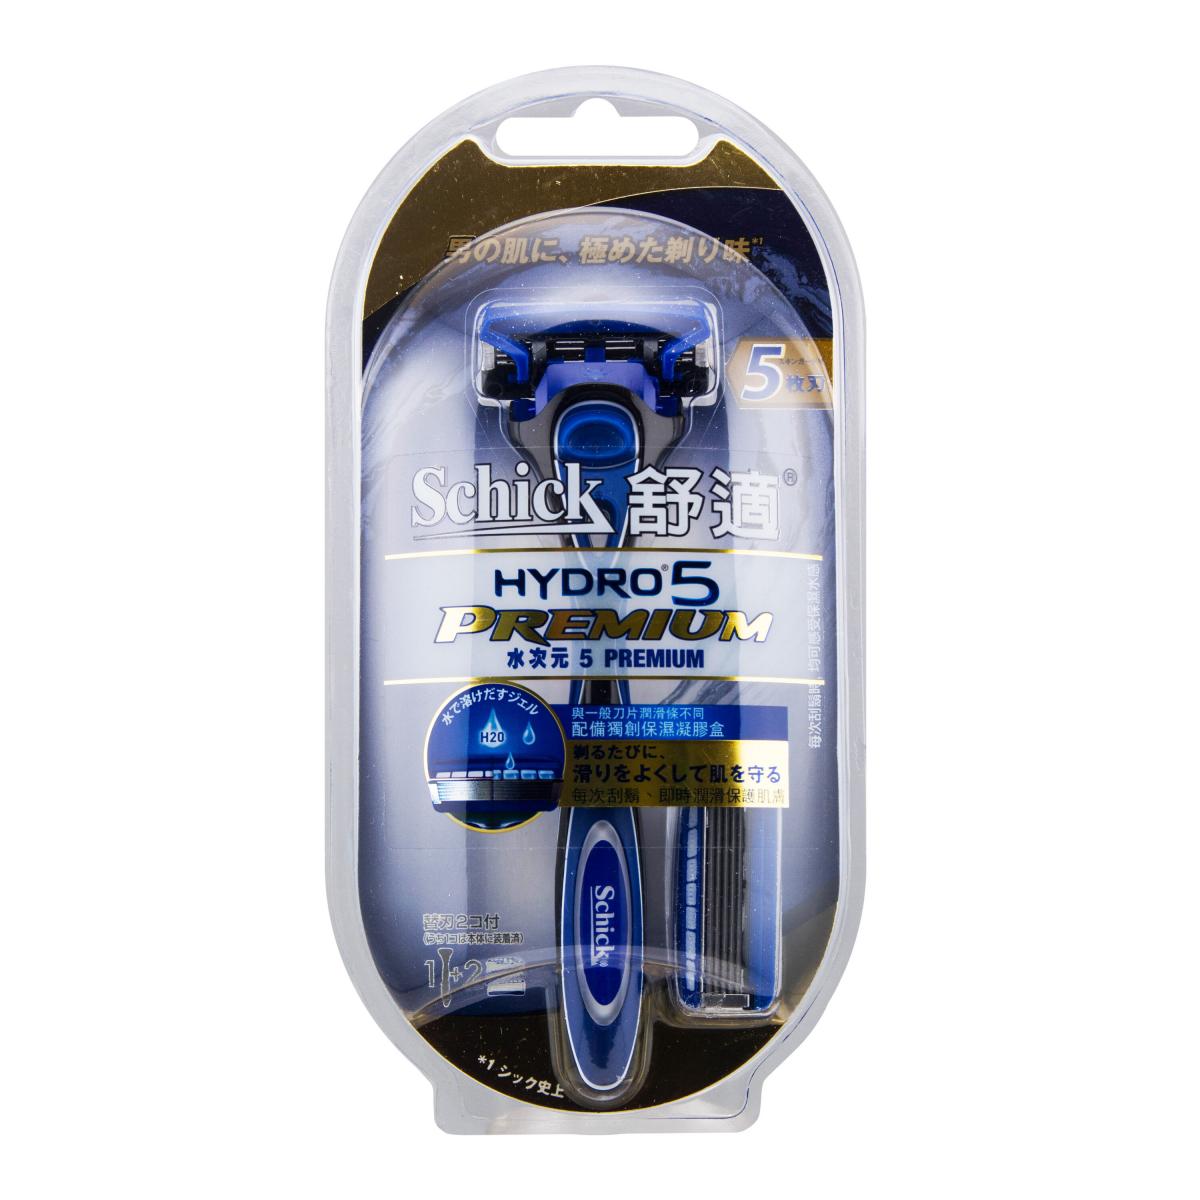 Hydro5 Premium Kit 2s (New Upgrade)